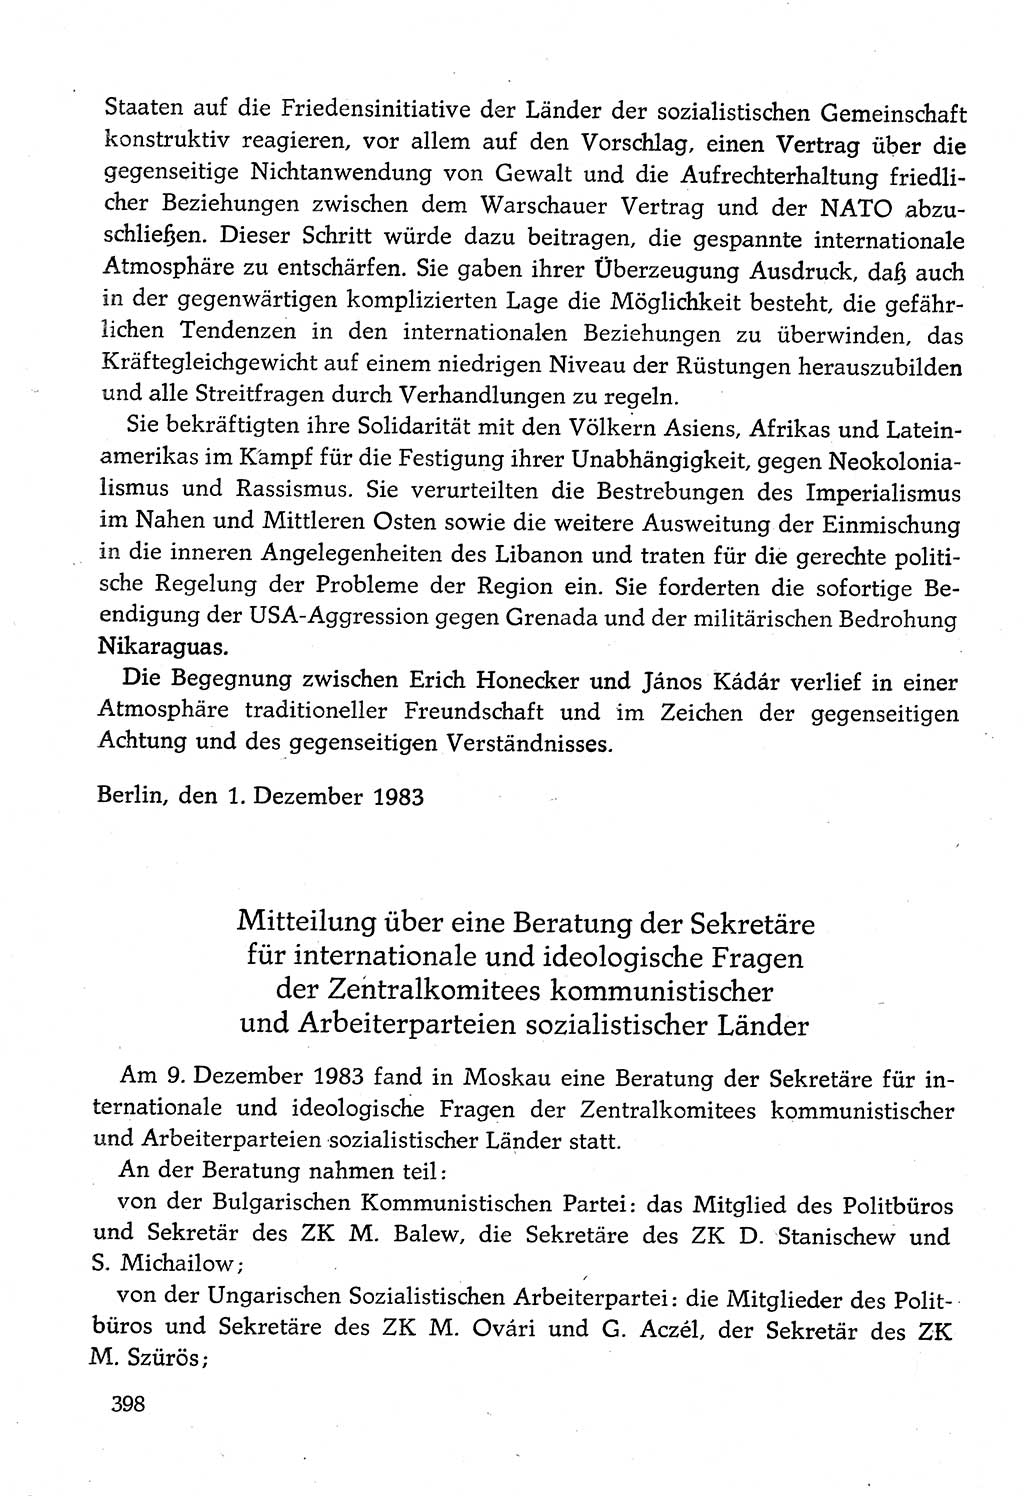 Dokumente der Sozialistischen Einheitspartei Deutschlands (SED) [Deutsche Demokratische Republik (DDR)] 1982-1983, Seite 398 (Dok. SED DDR 1982-1983, S. 398)